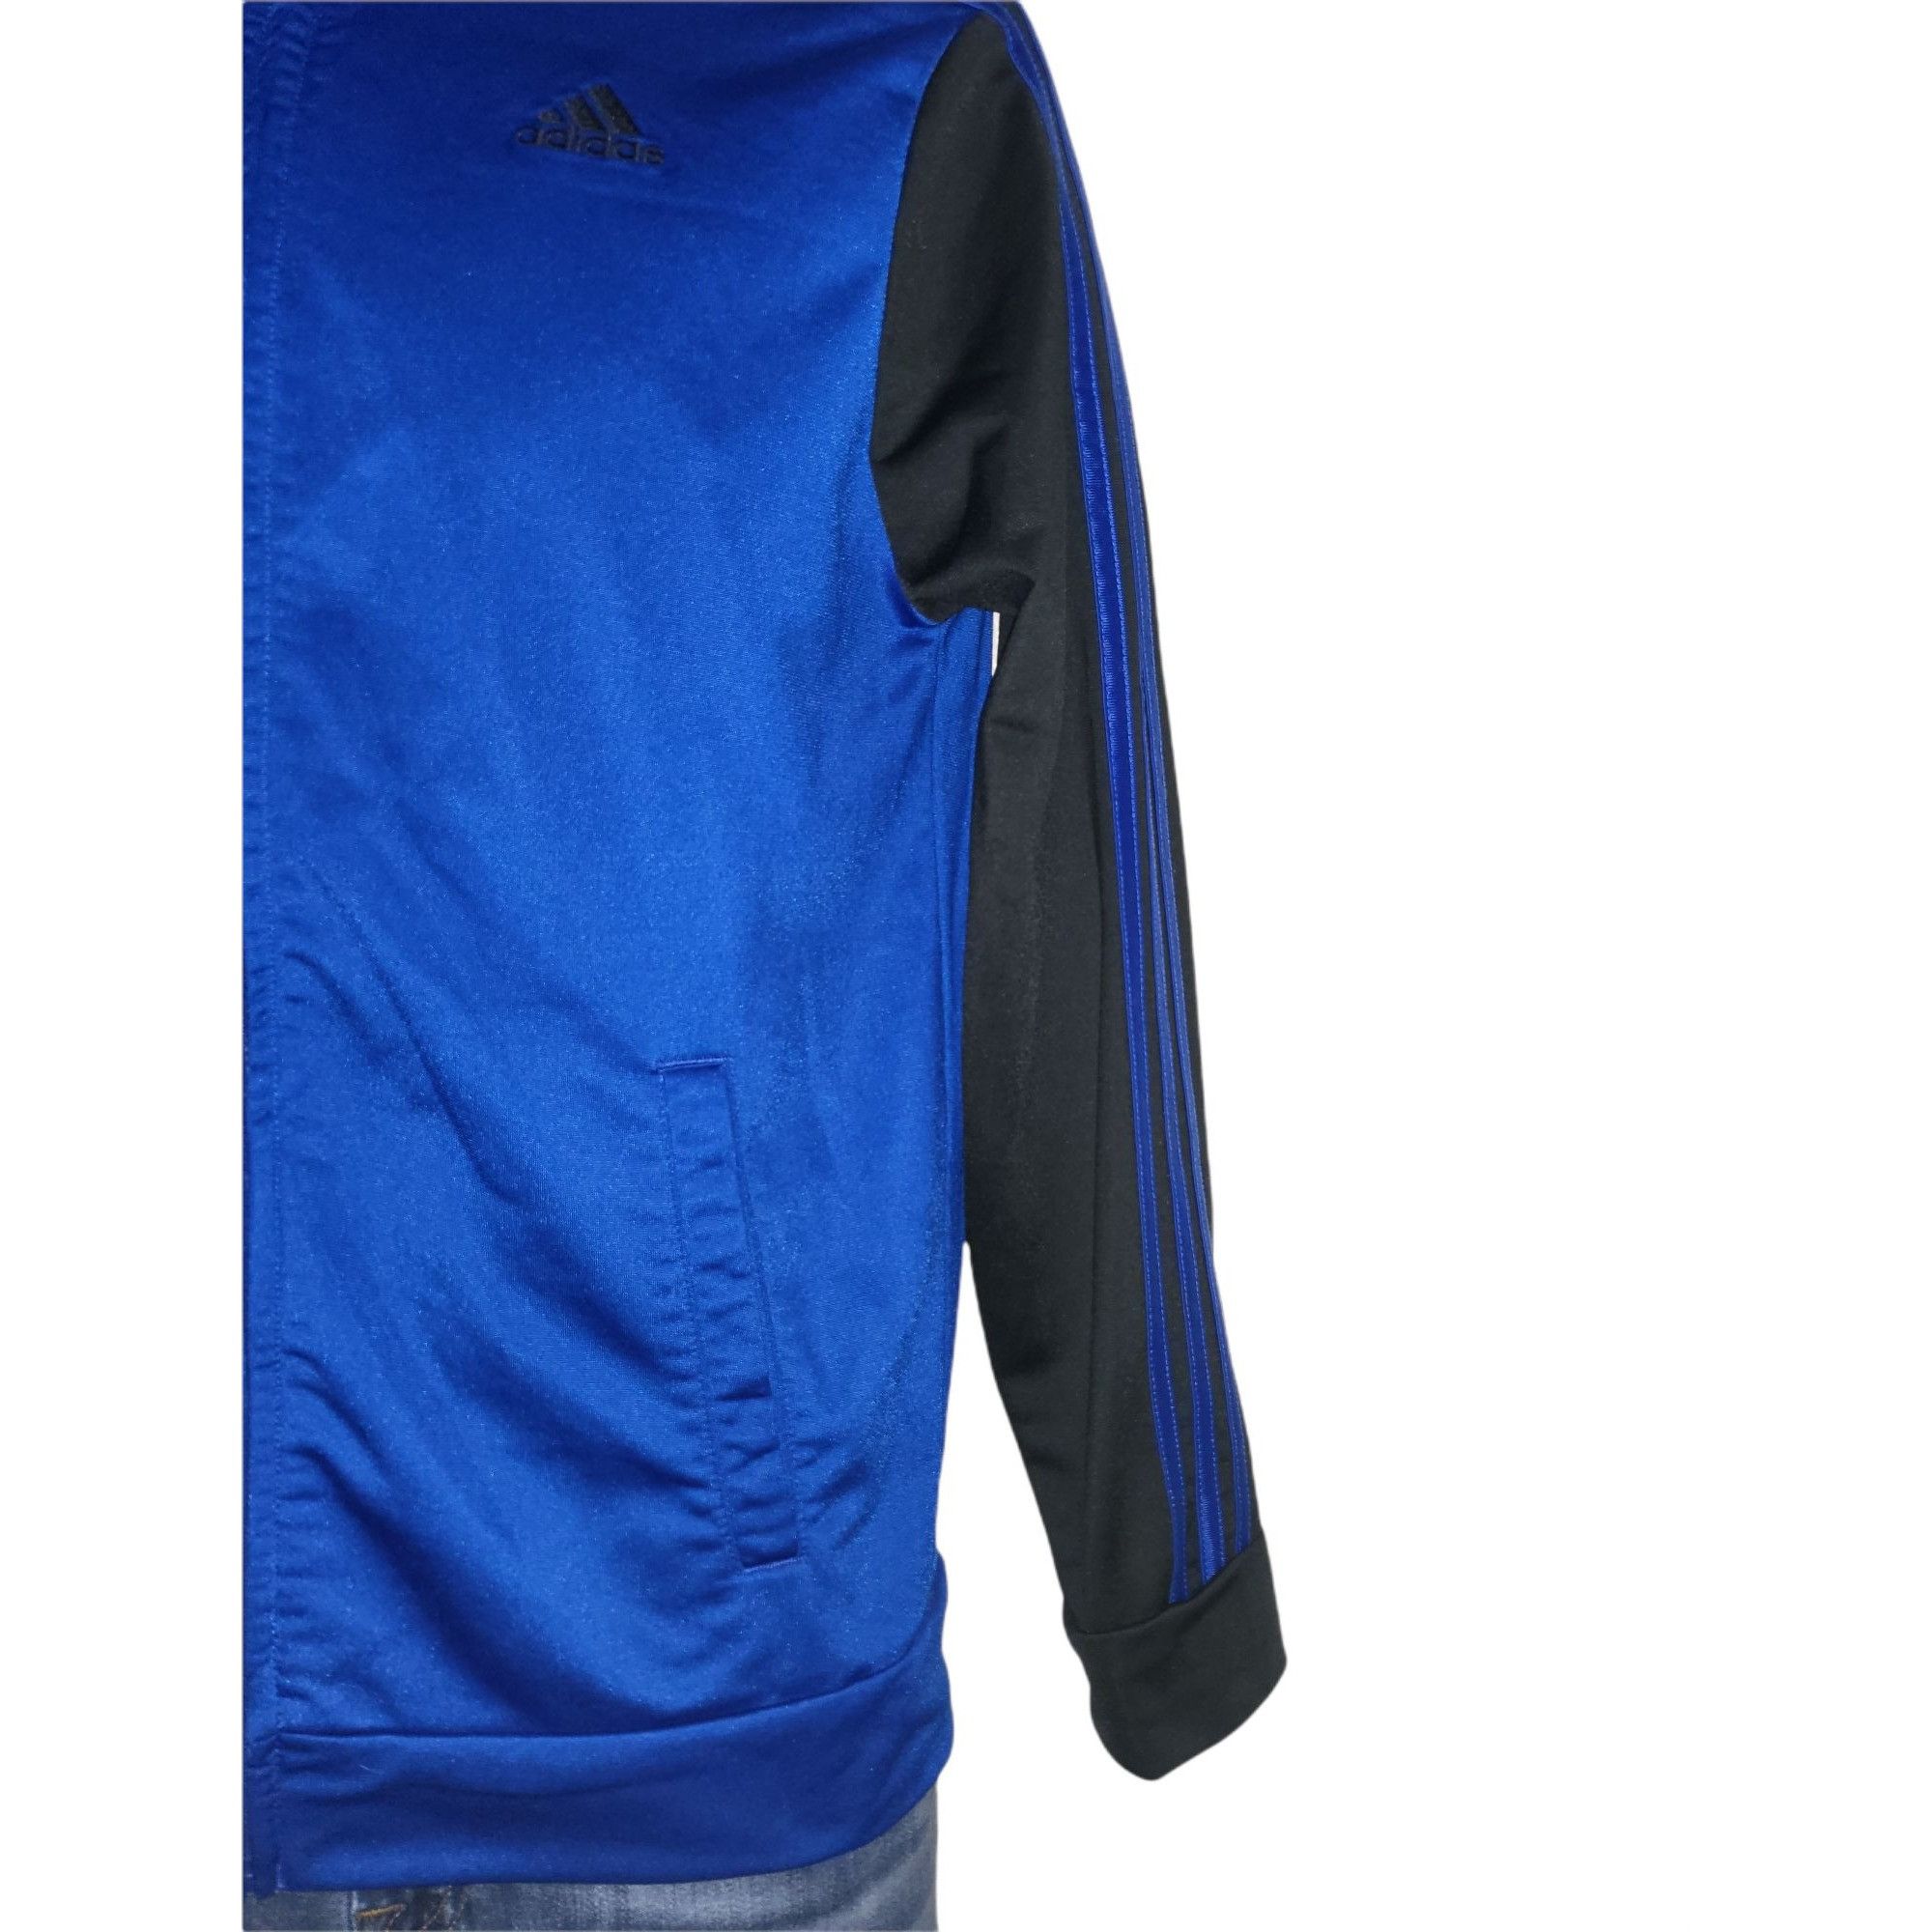 Adidas Adidas Blue Long Sleeve Striped Sz XL 18 / 20 Track Jacket W Size XL / US 12-14 / IT 48-50 - 4 Thumbnail